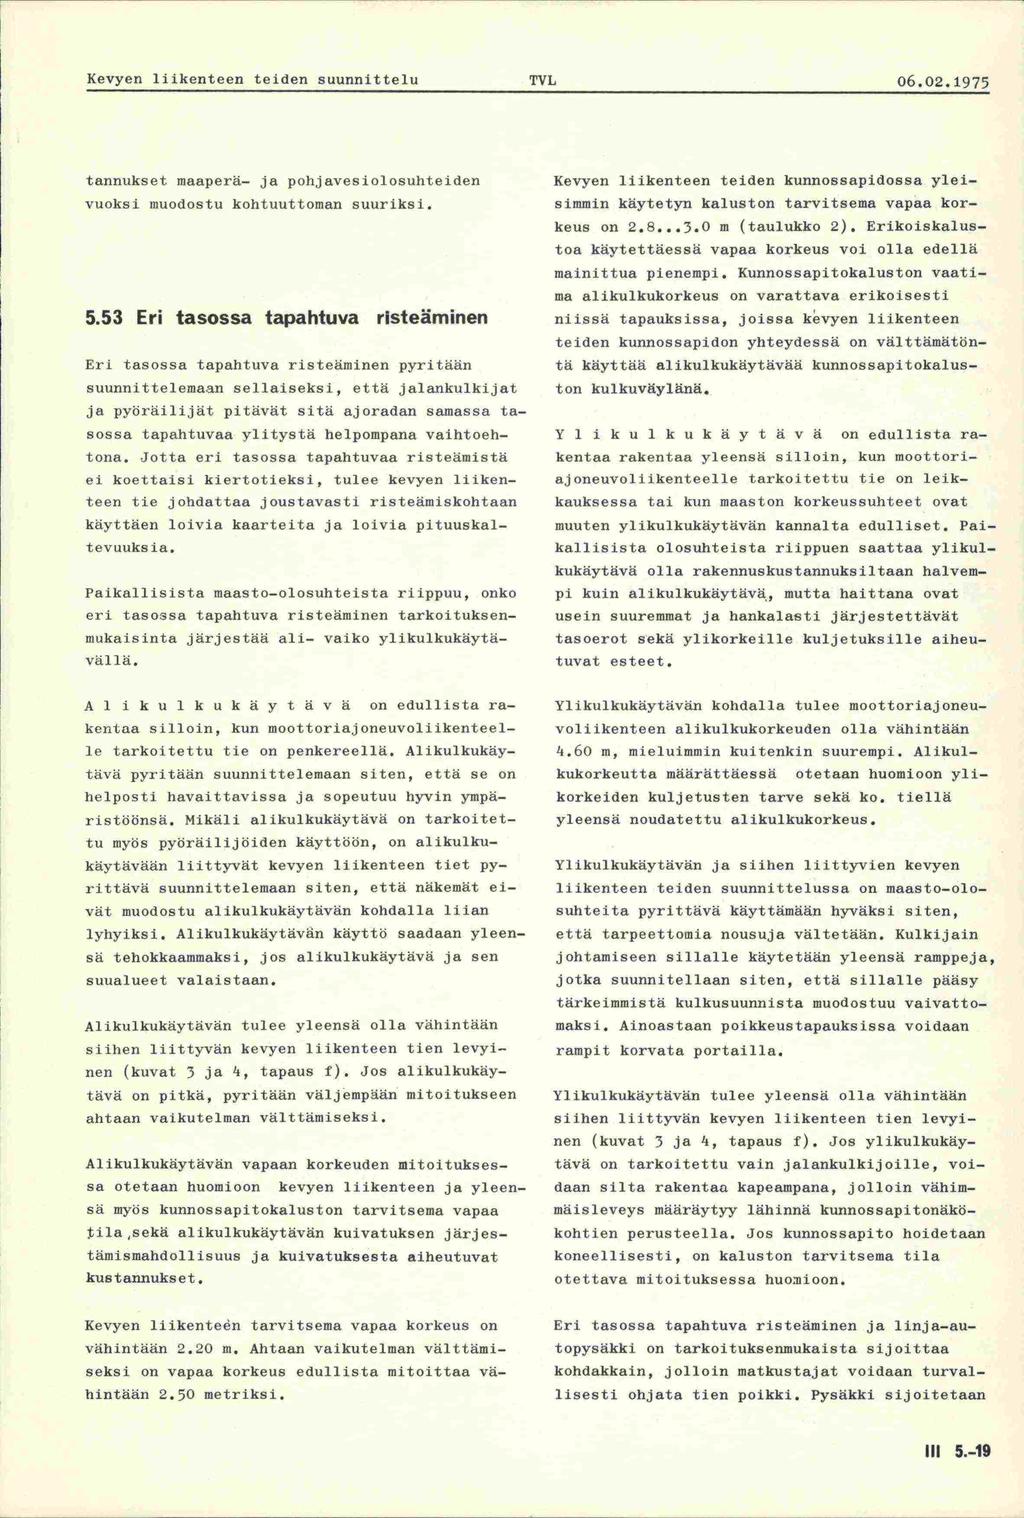 Kevyen liikenteen teiden suunnittelu PVL 06.02.1975 tannukset maaperä- ja pohjavesiolosuhteiden vuoksi inuodostu kohtuuttoman suuriksi. 5.